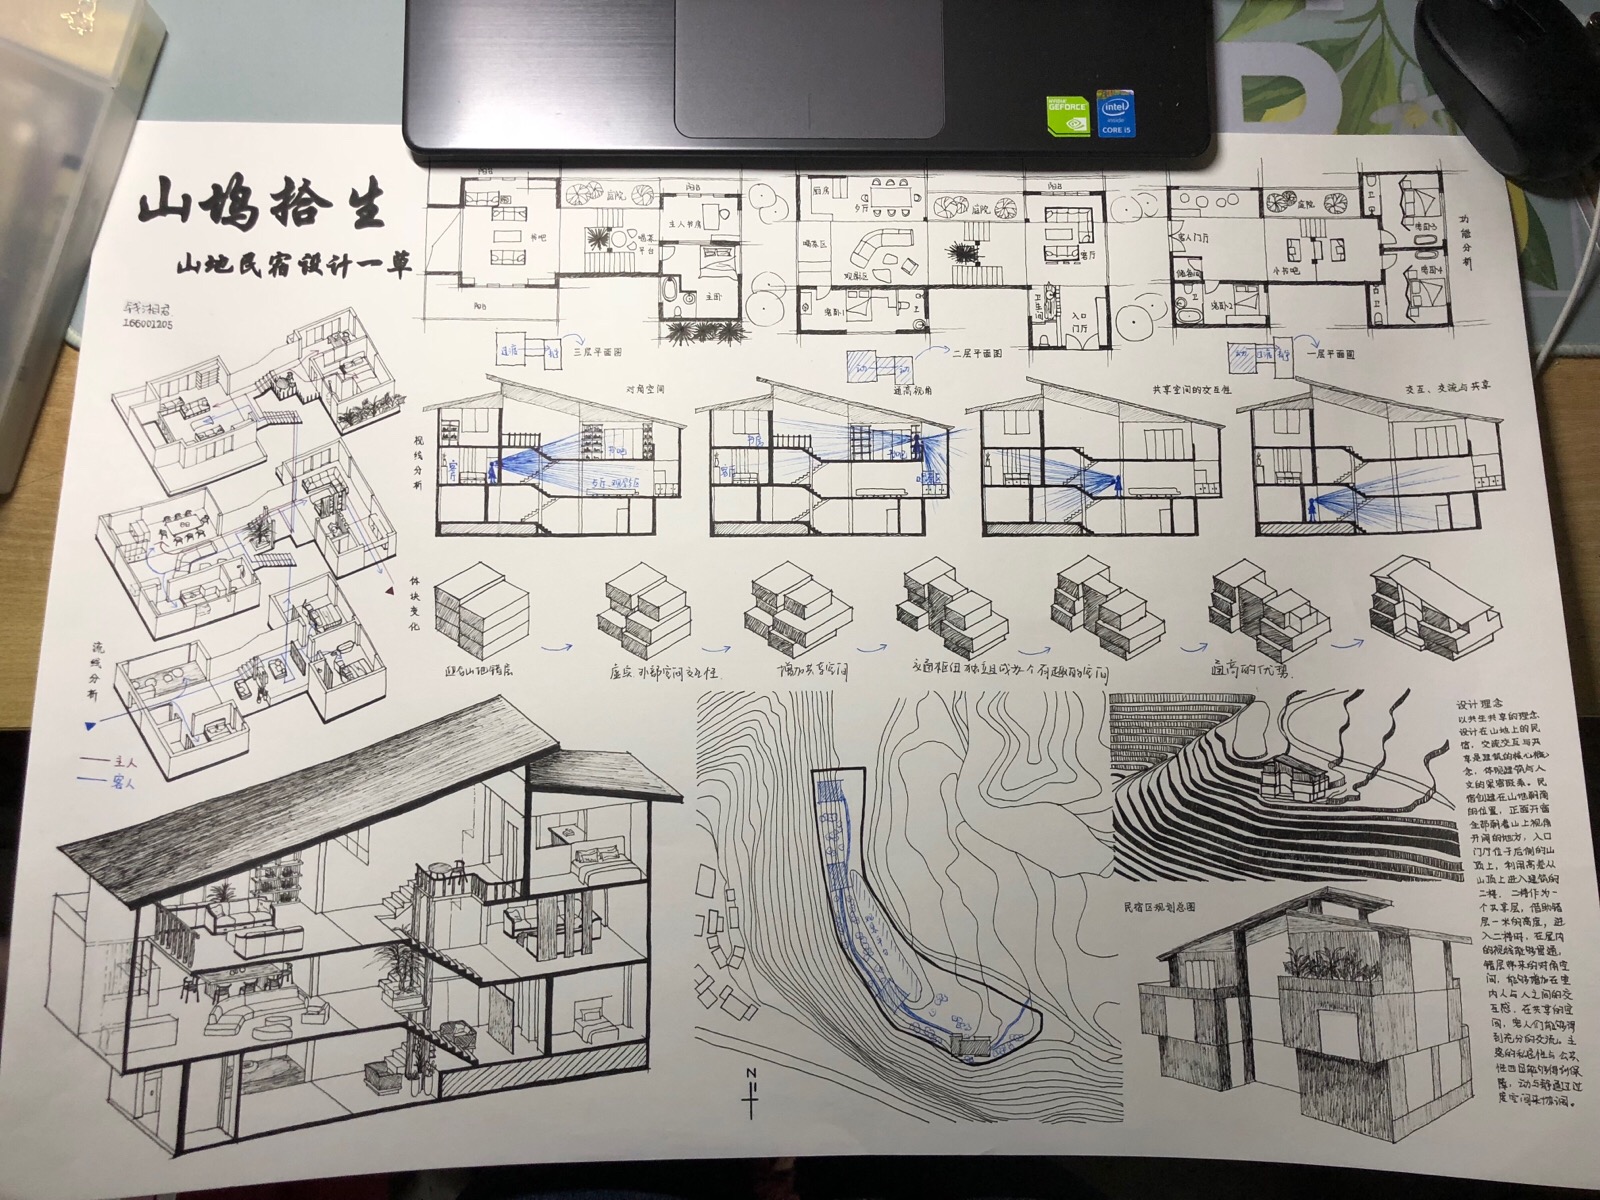 大三上建筑设计课程作业;宁波鄞州山地民宿设计一草